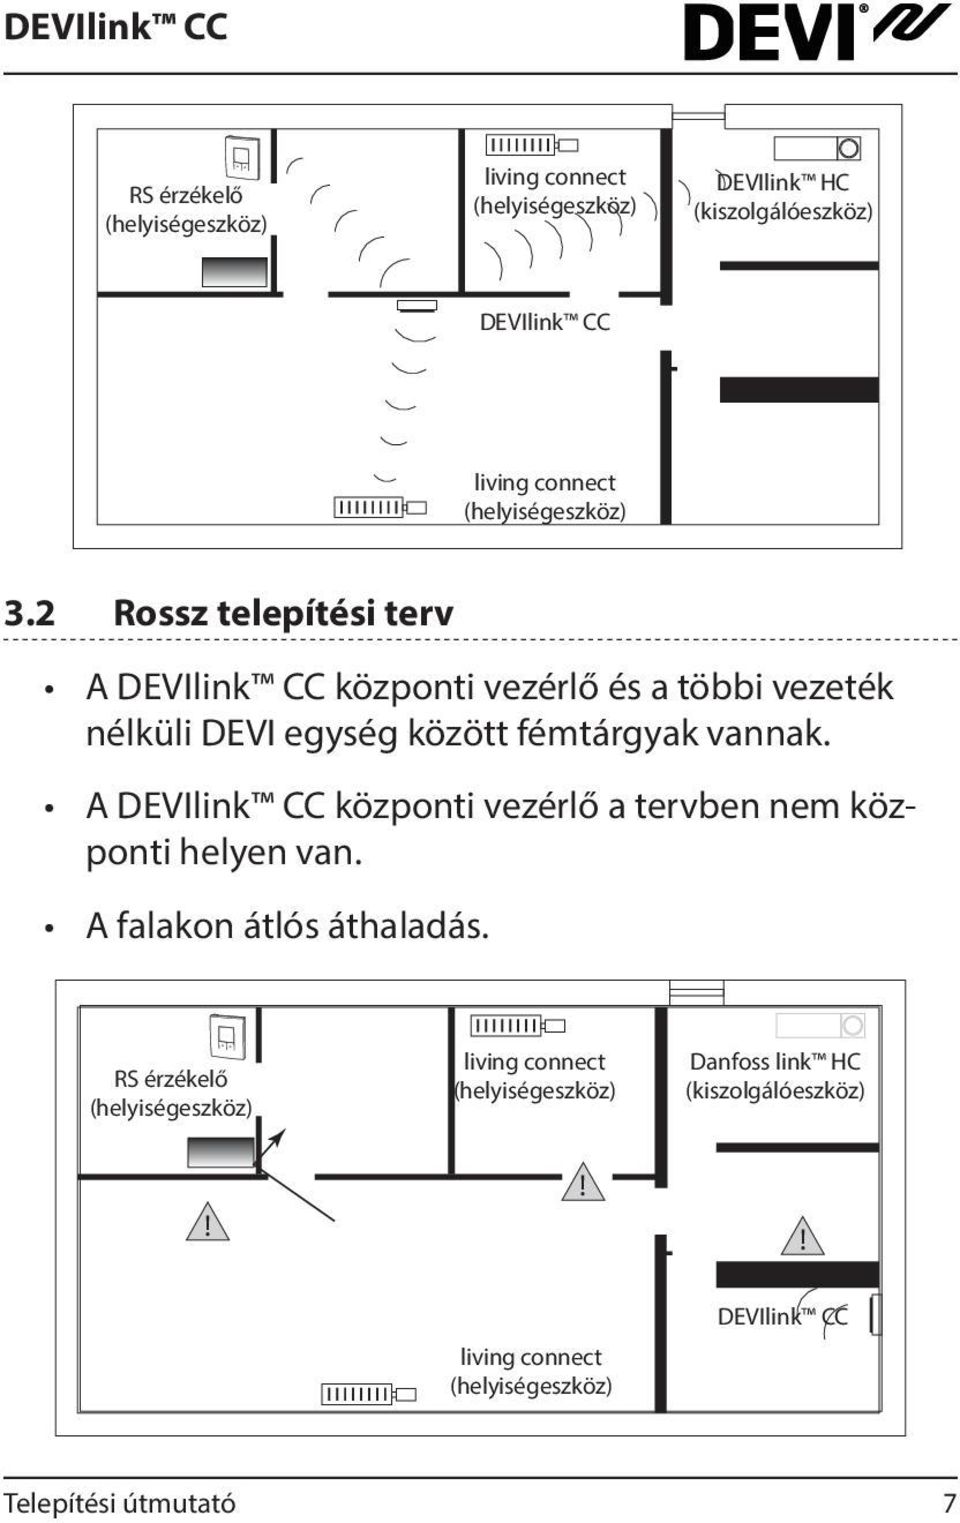 2 Rossz telepítési terv A DEVIlink CC központi vezérlő és a többi vezeték nélküli DEVI egység között fémtárgyak vannak.